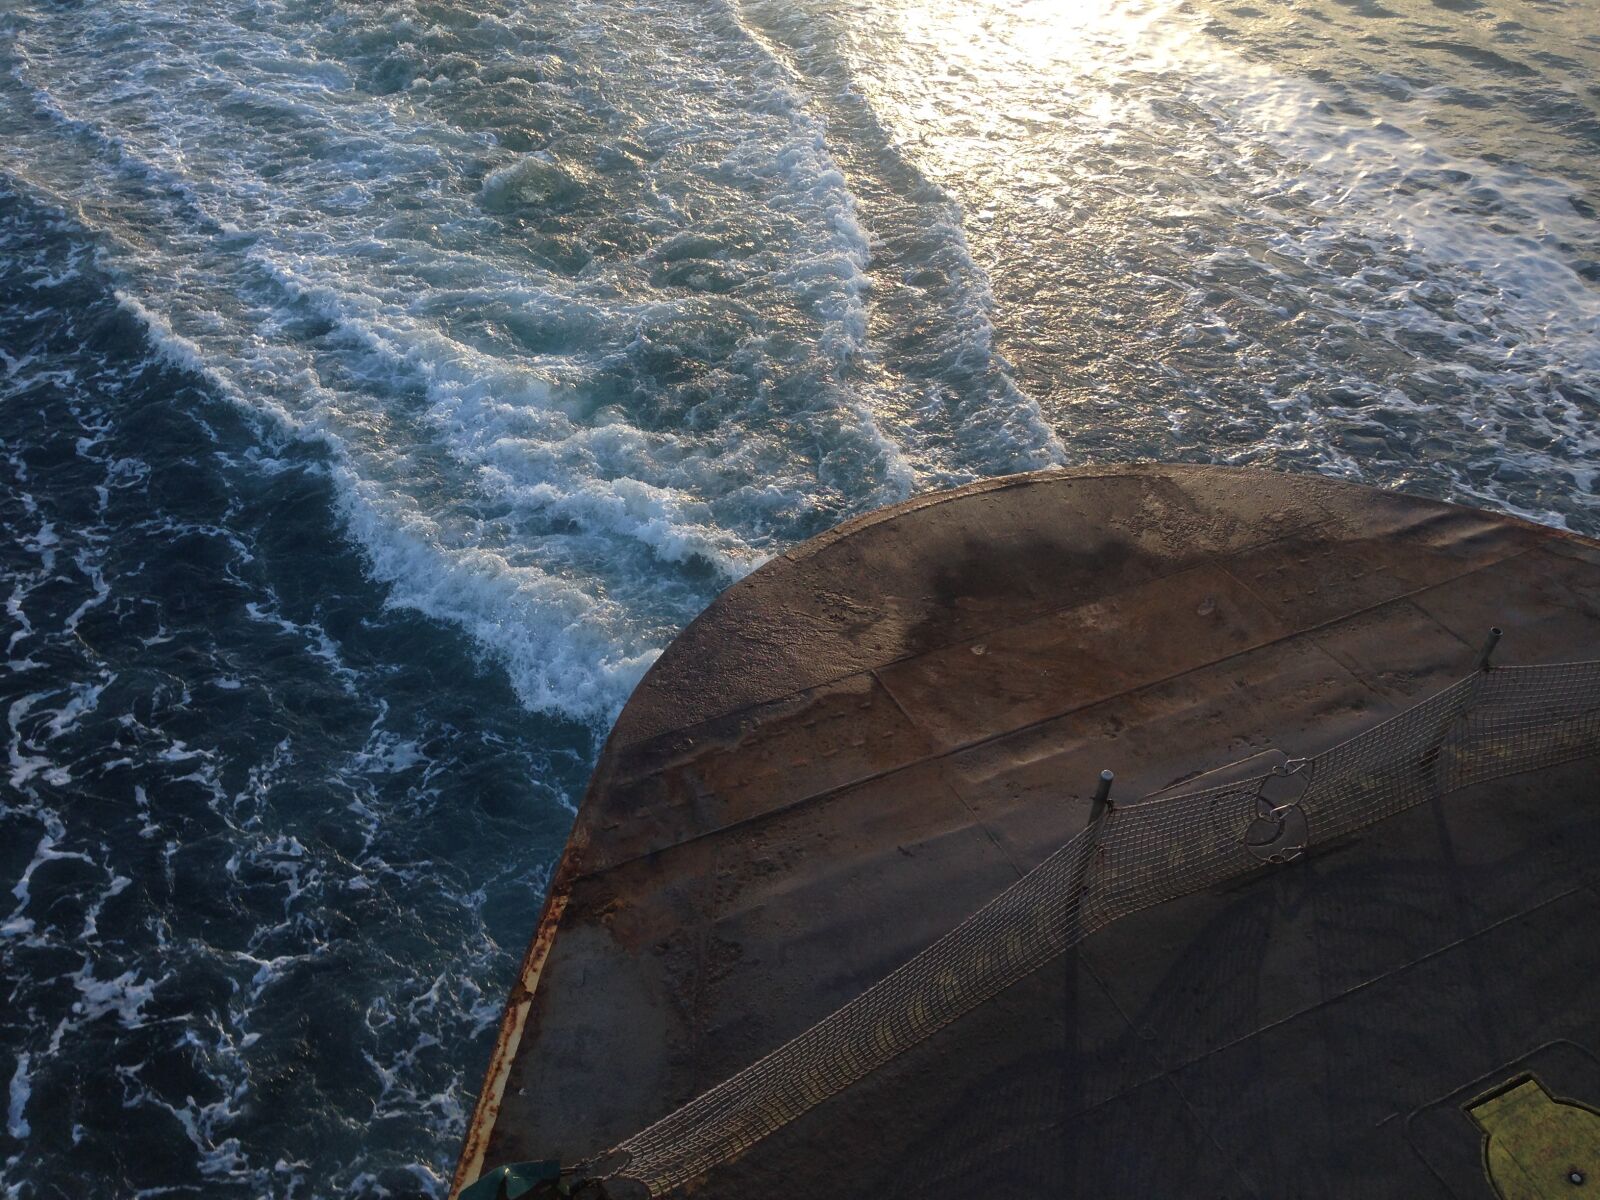 Apple iPhone 5 sample photo. Ferry, washington state, wake photography